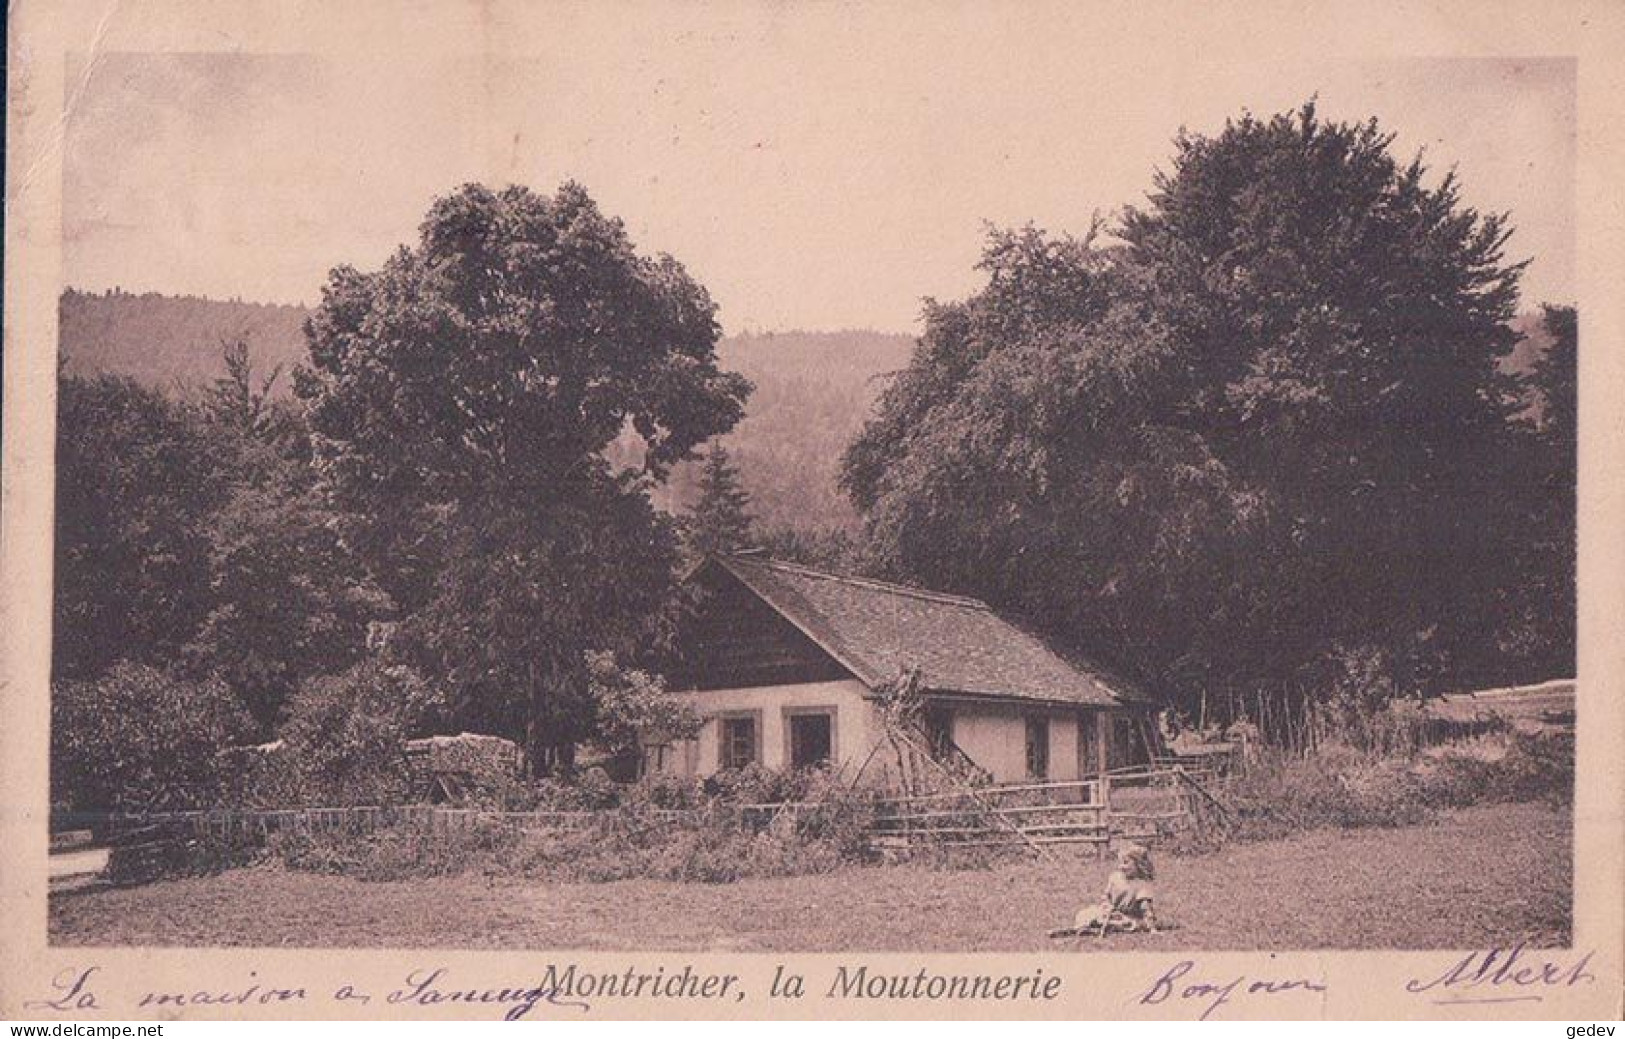 Montricher VD, La Moutonnerie (5.10.1909) Pli D'angle - Montricher